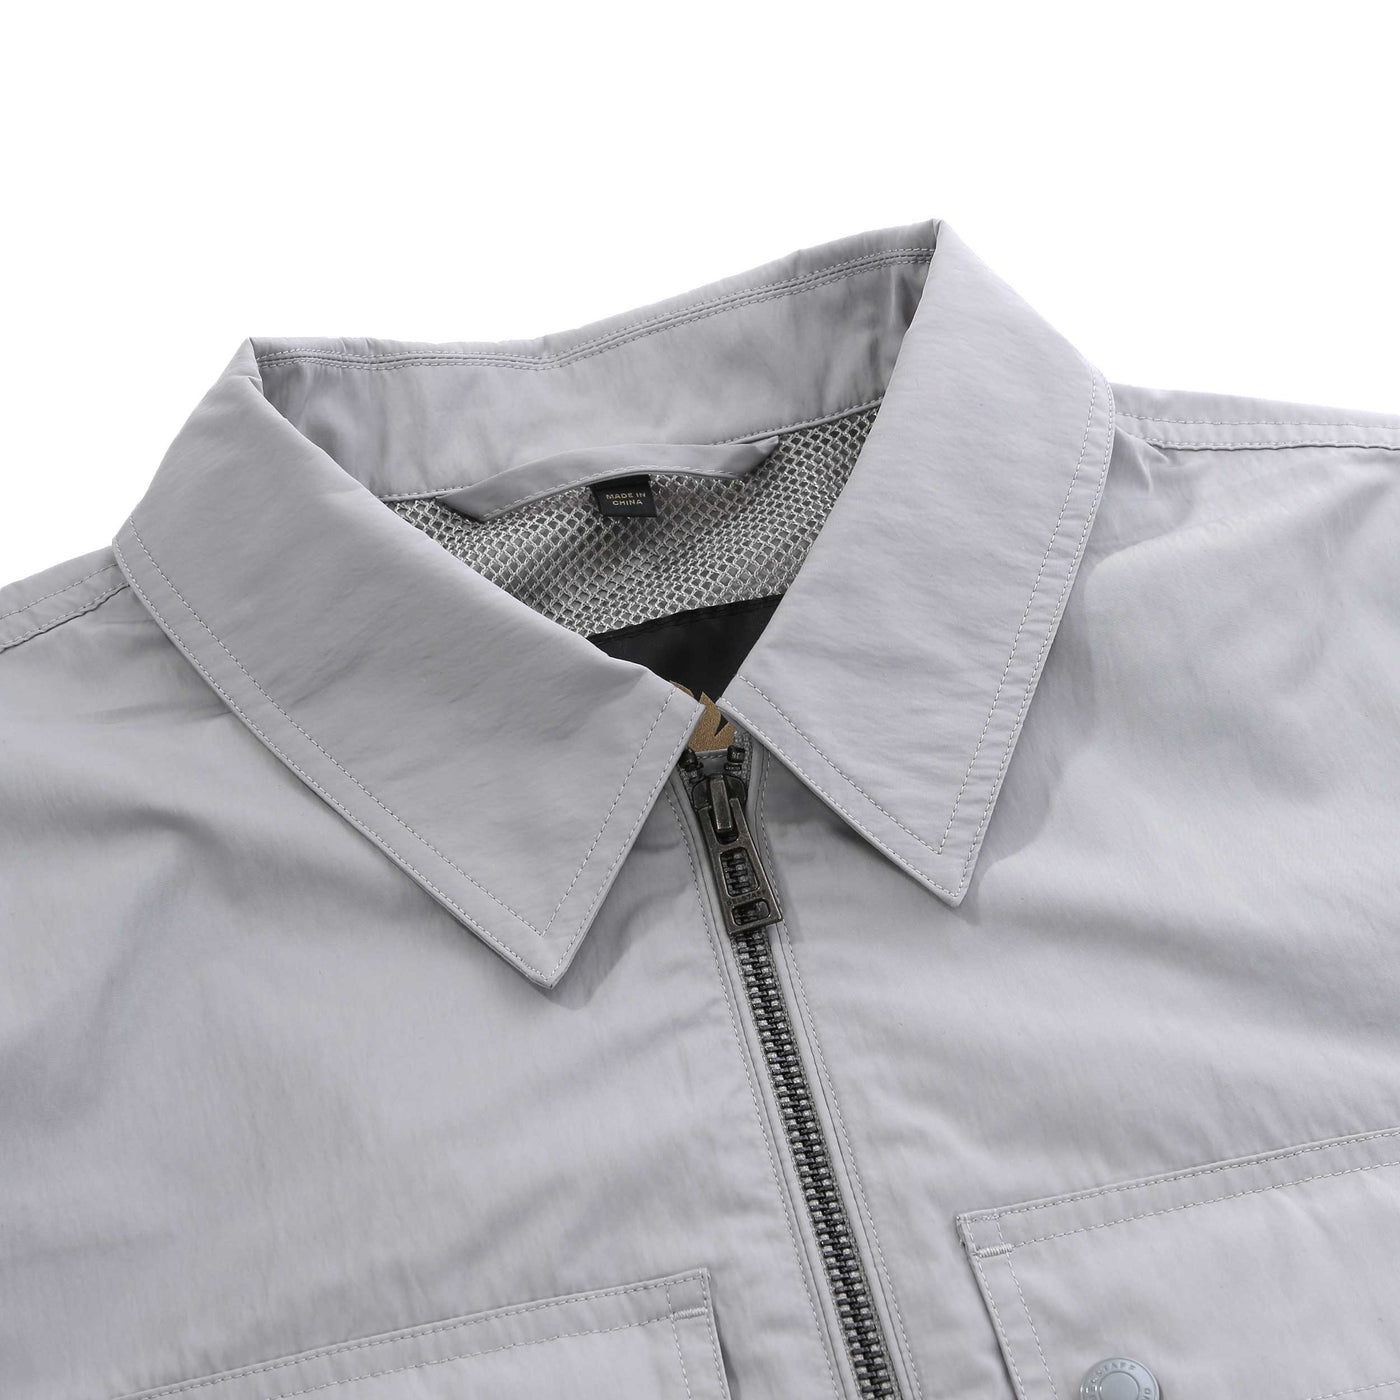 Belstaff Outline Overshirt in Cloud Grey Collar